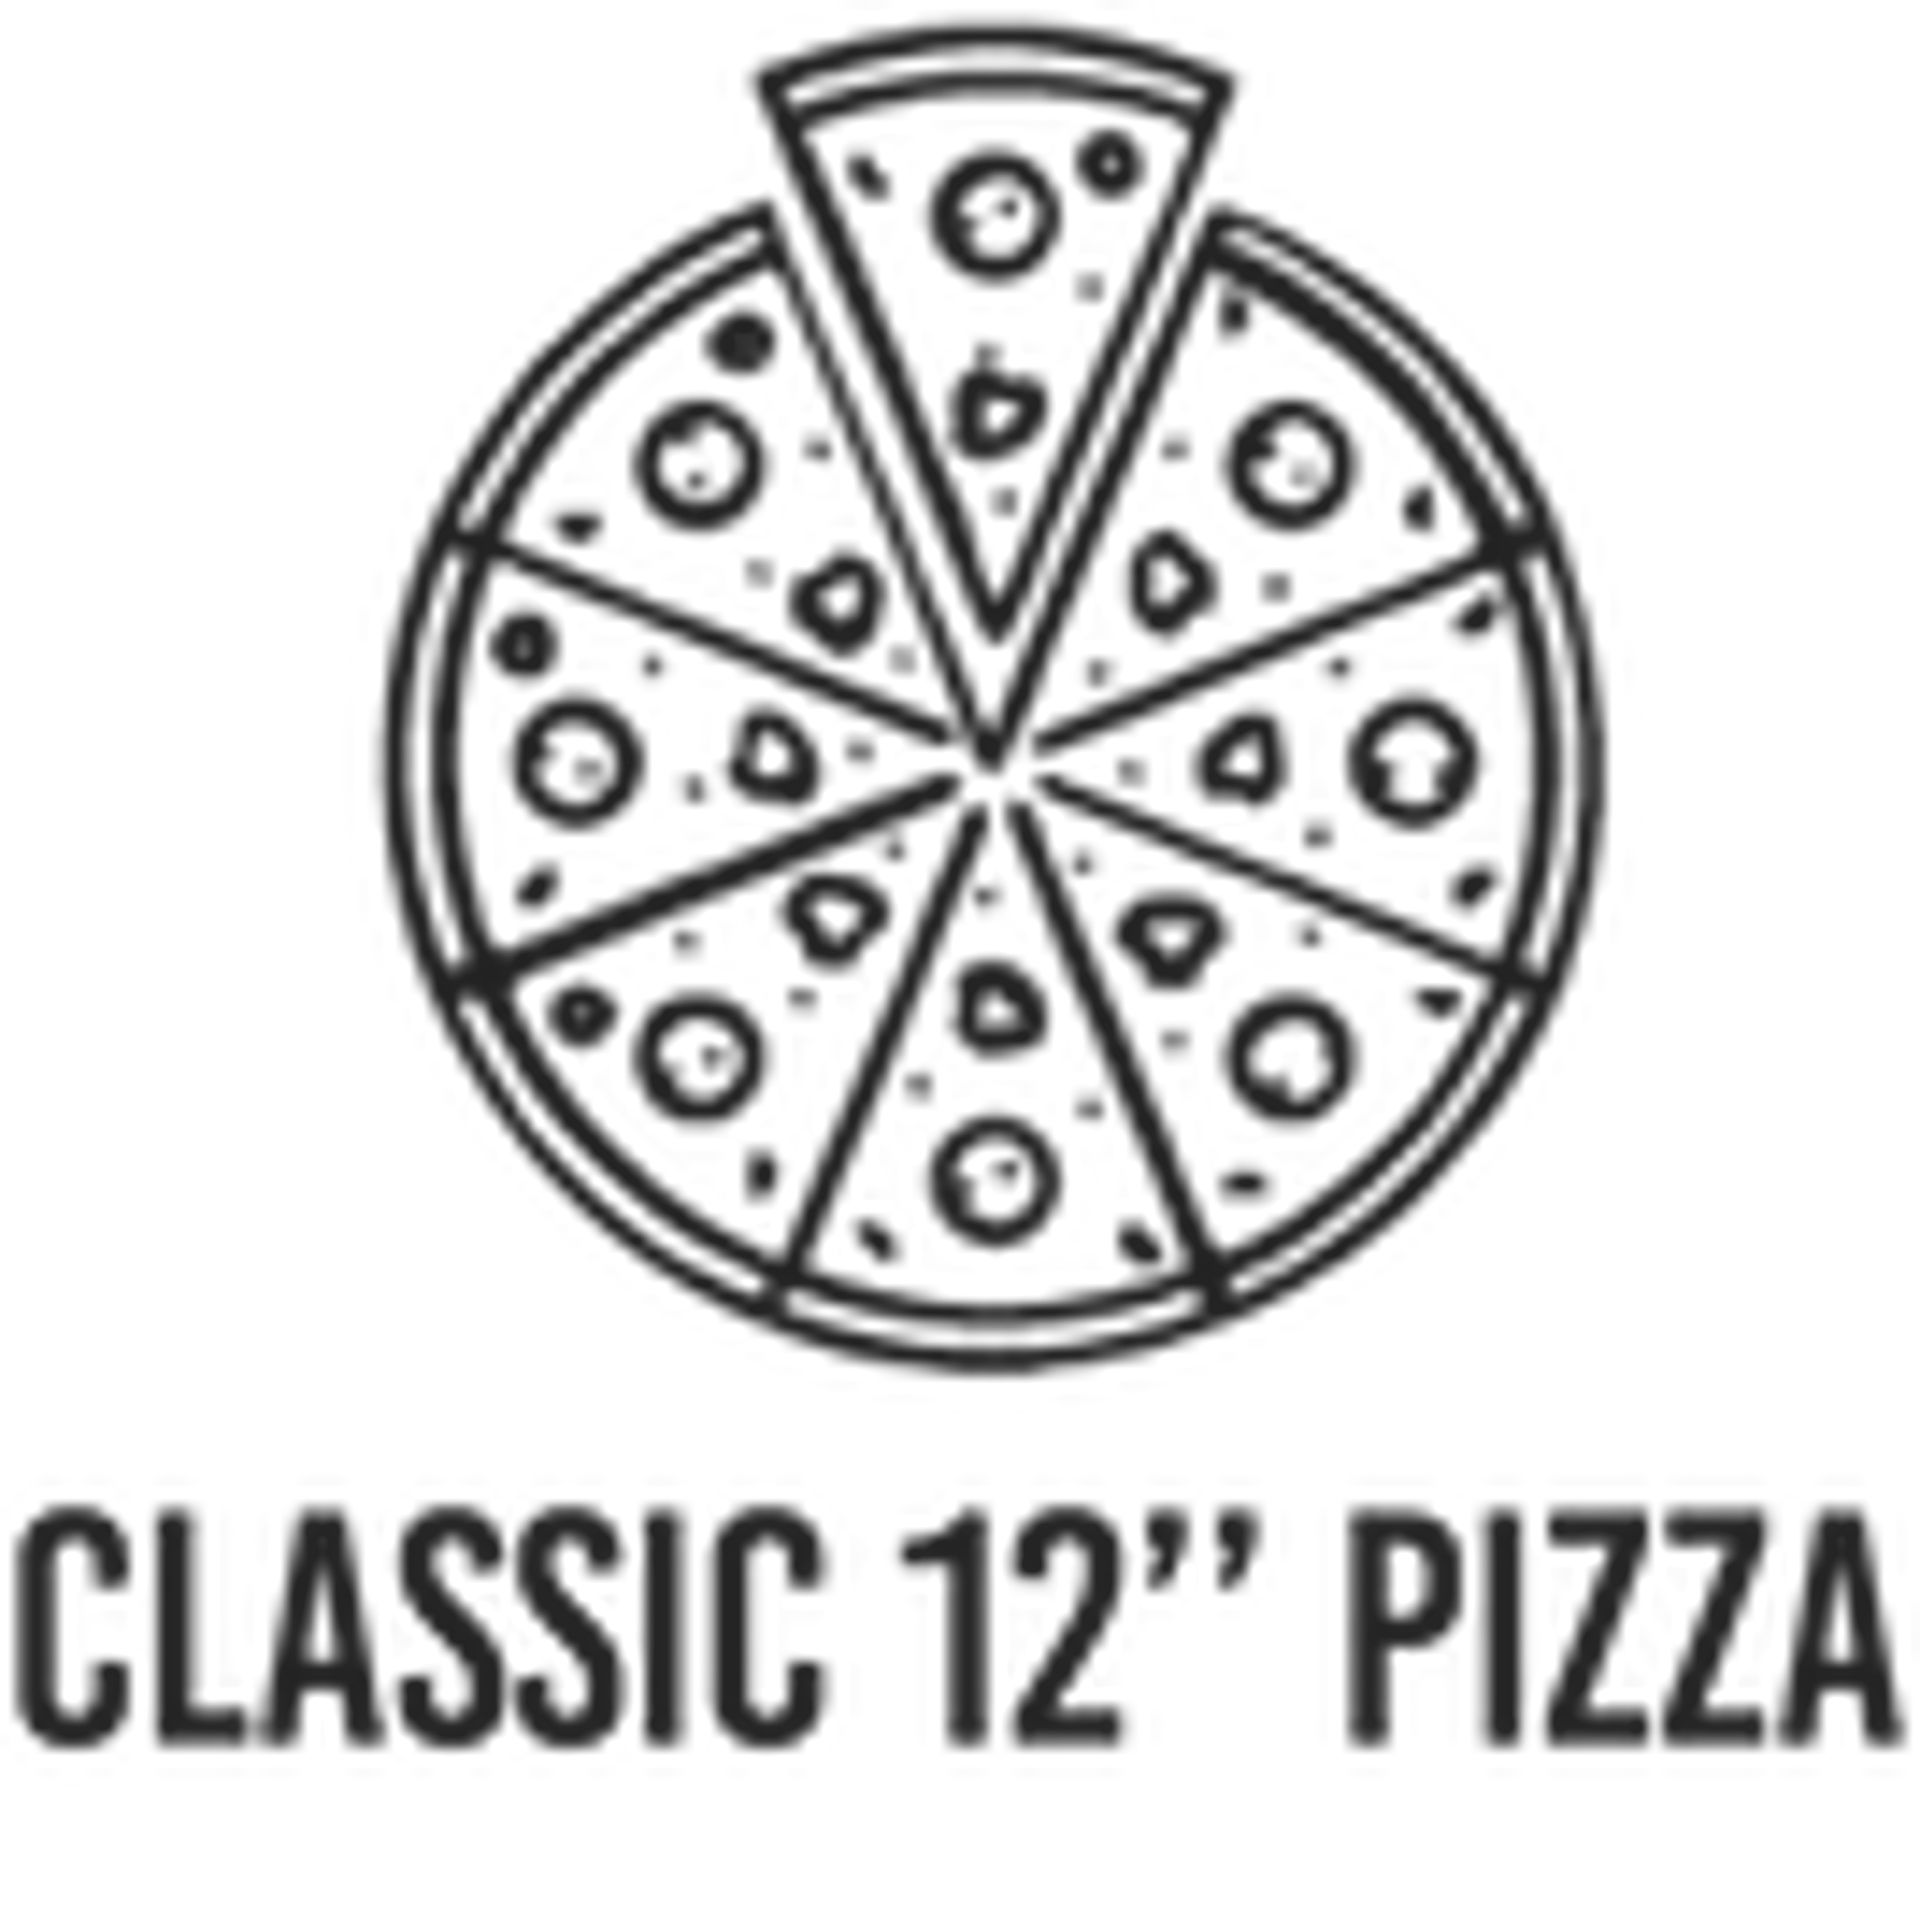 Classic 12" Pizza's